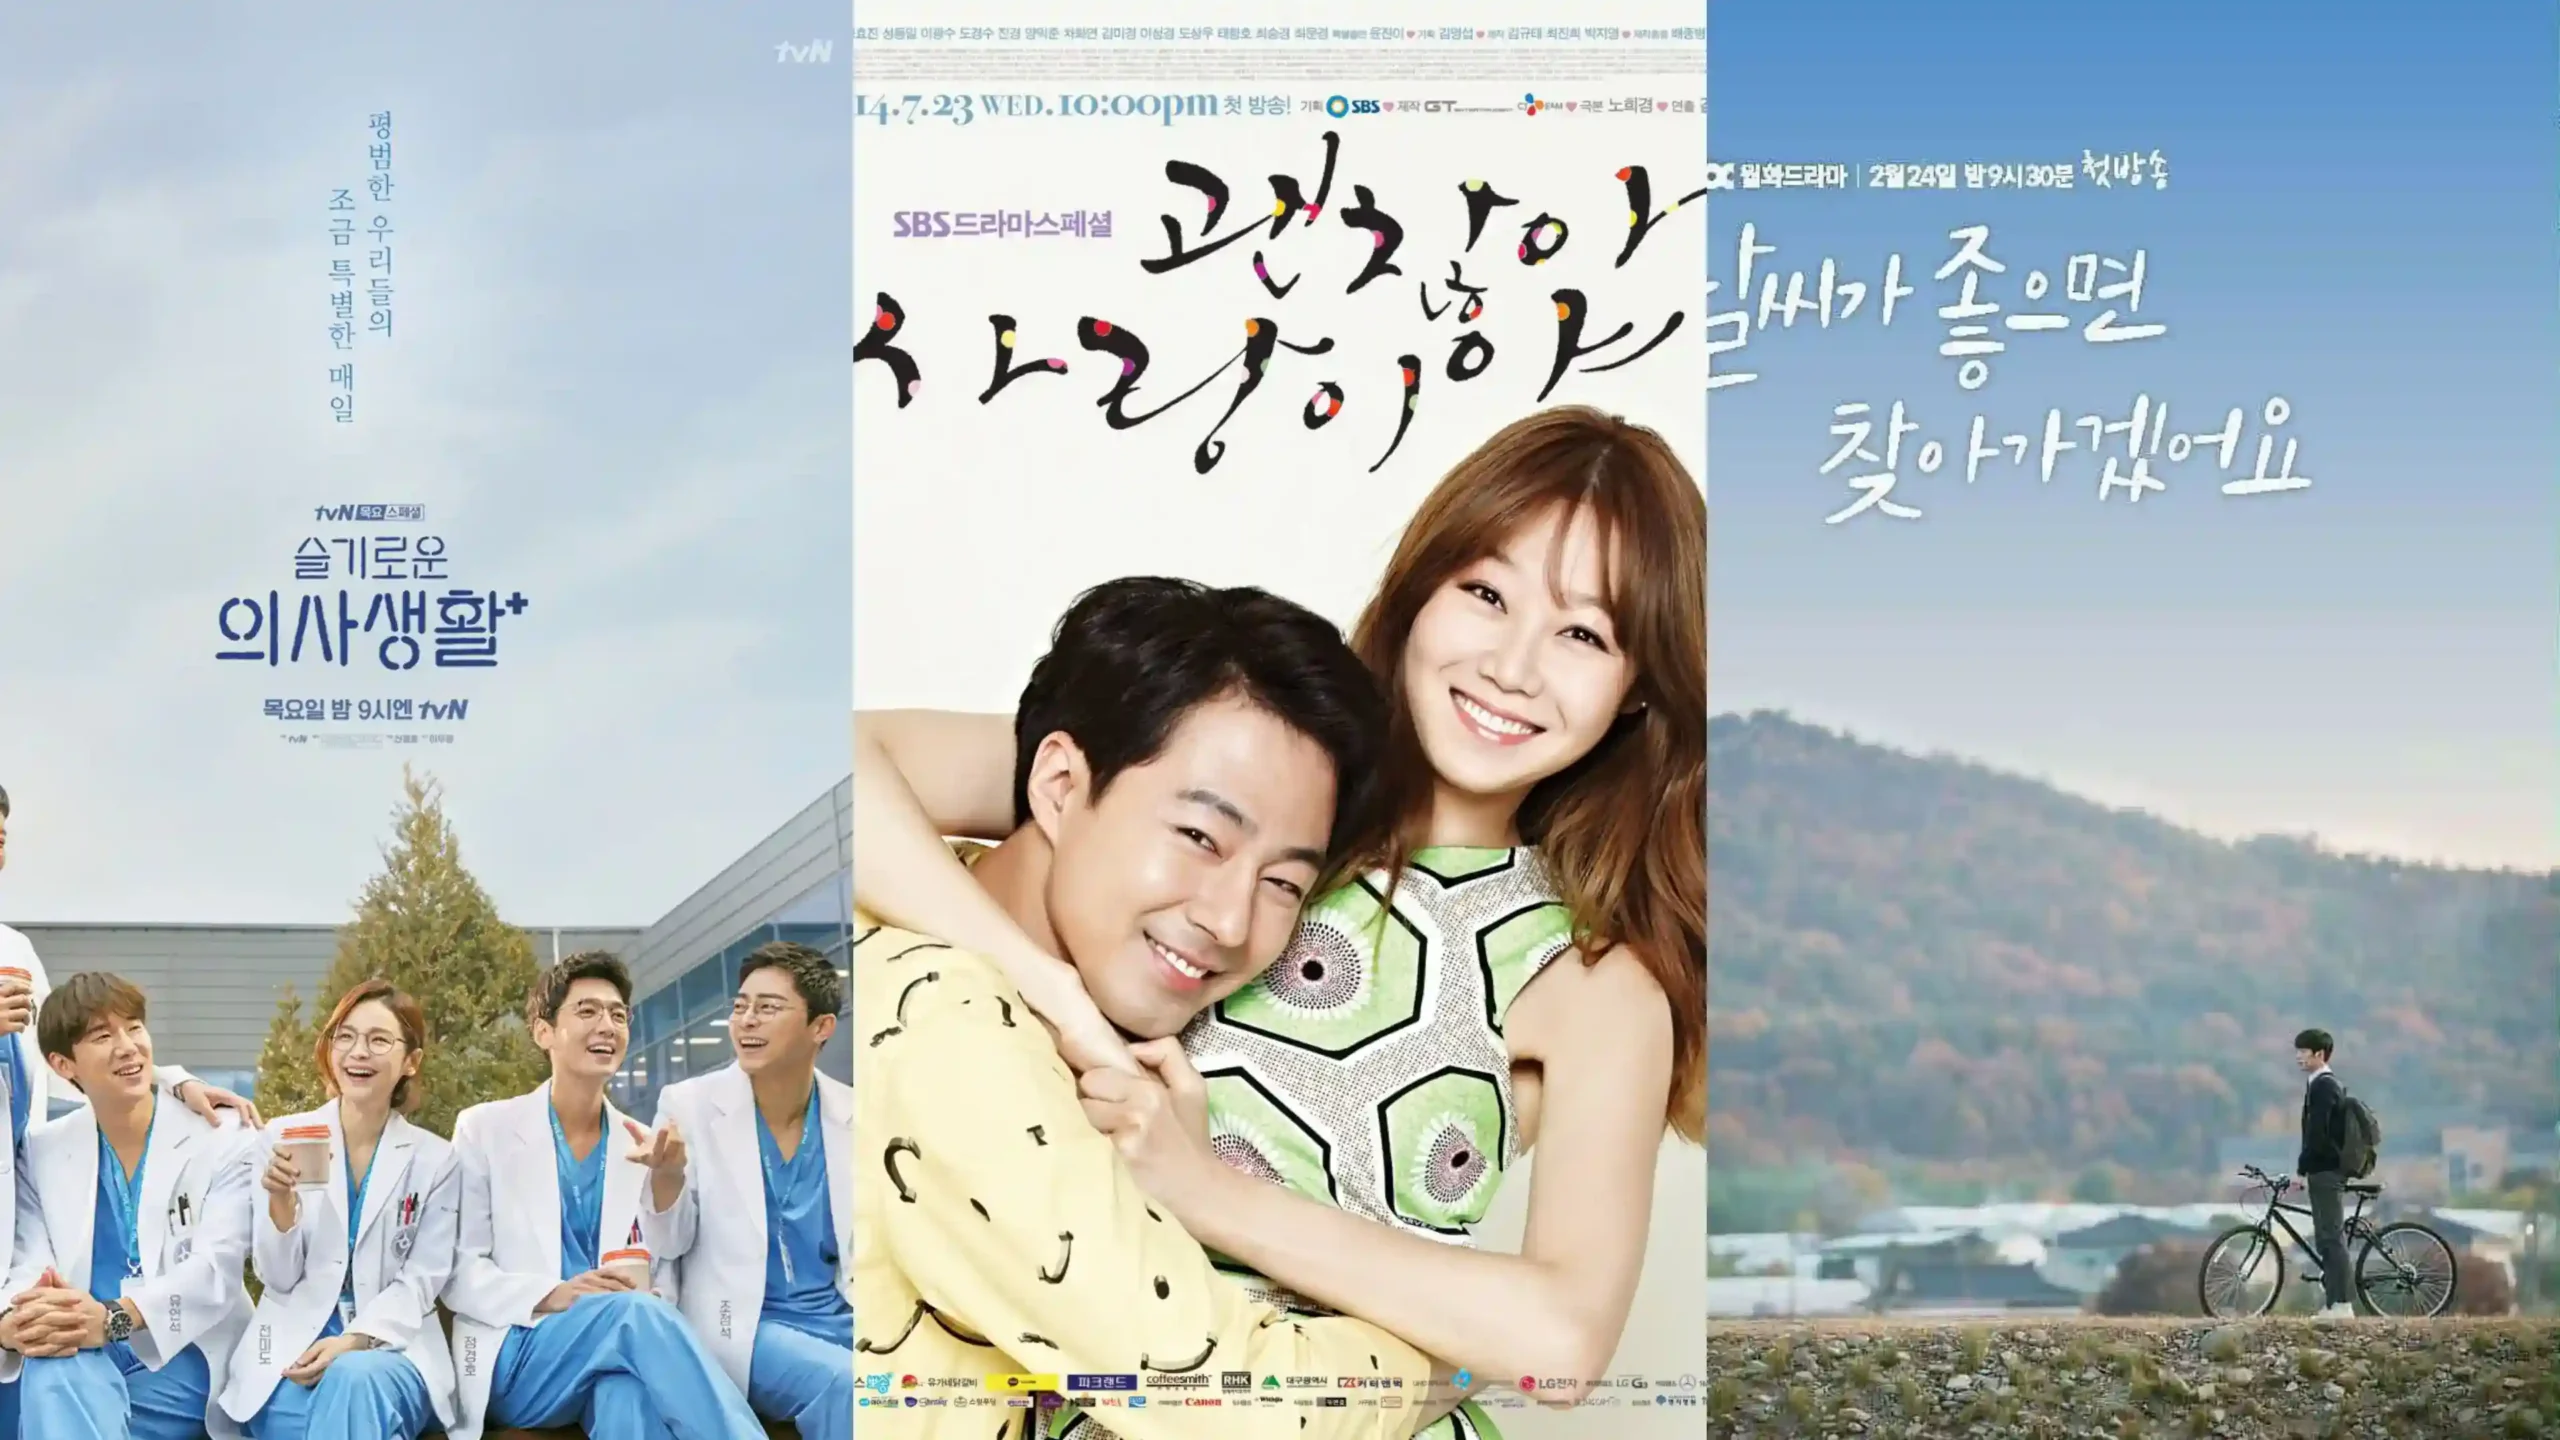 Best healing Korean dramas to watch scaled